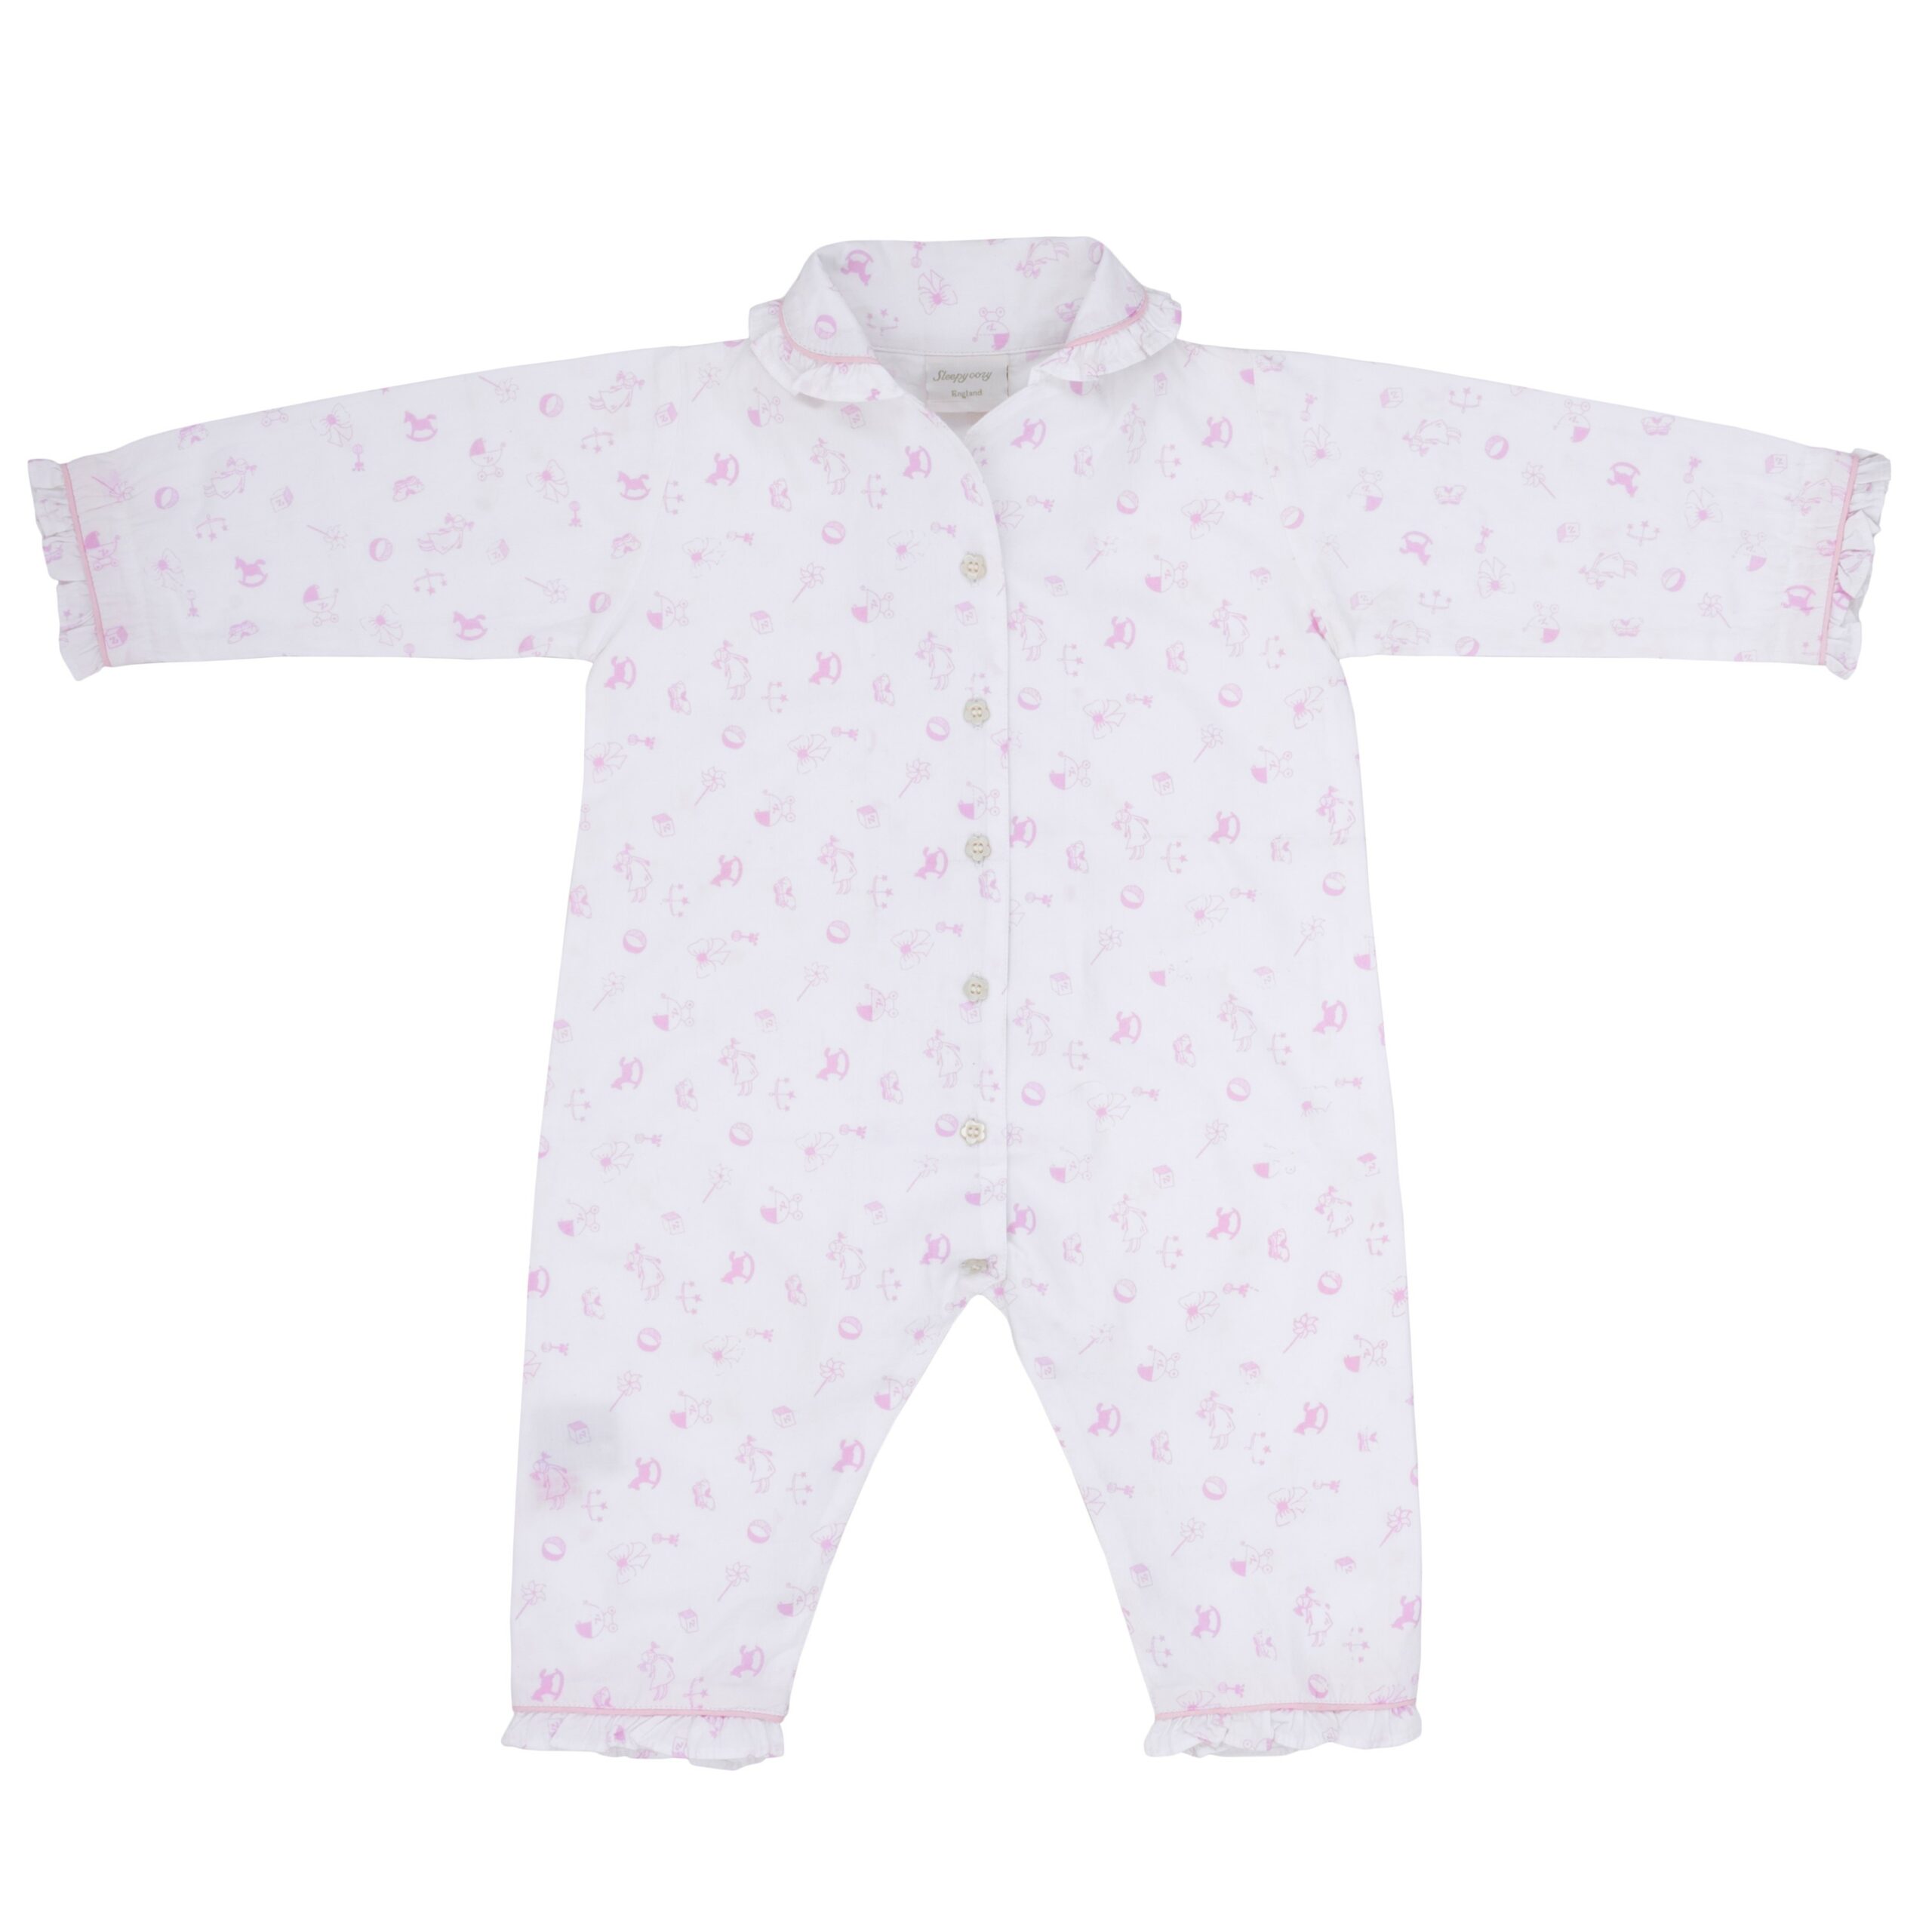 Pink nursery romper sleep suit